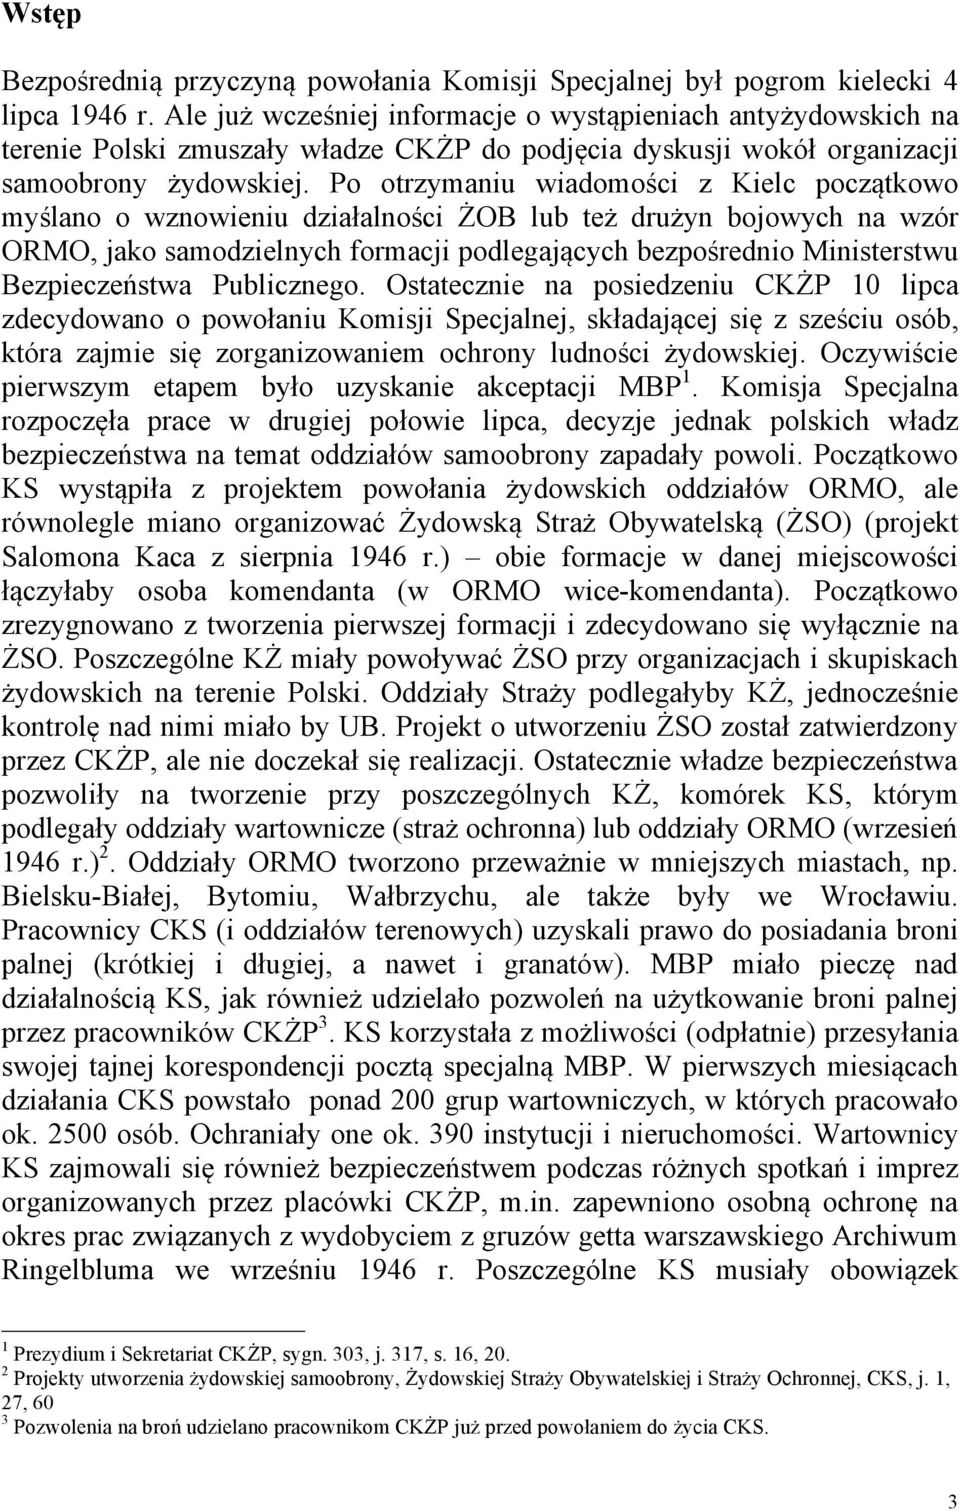 Po otrzymaniu wiadomości z Kielc początkowo myślano o wznowieniu działalności ŻOB lub też drużyn bojowych na wzór ORMO, jako samodzielnych formacji podlegających bezpośrednio Ministerstwu